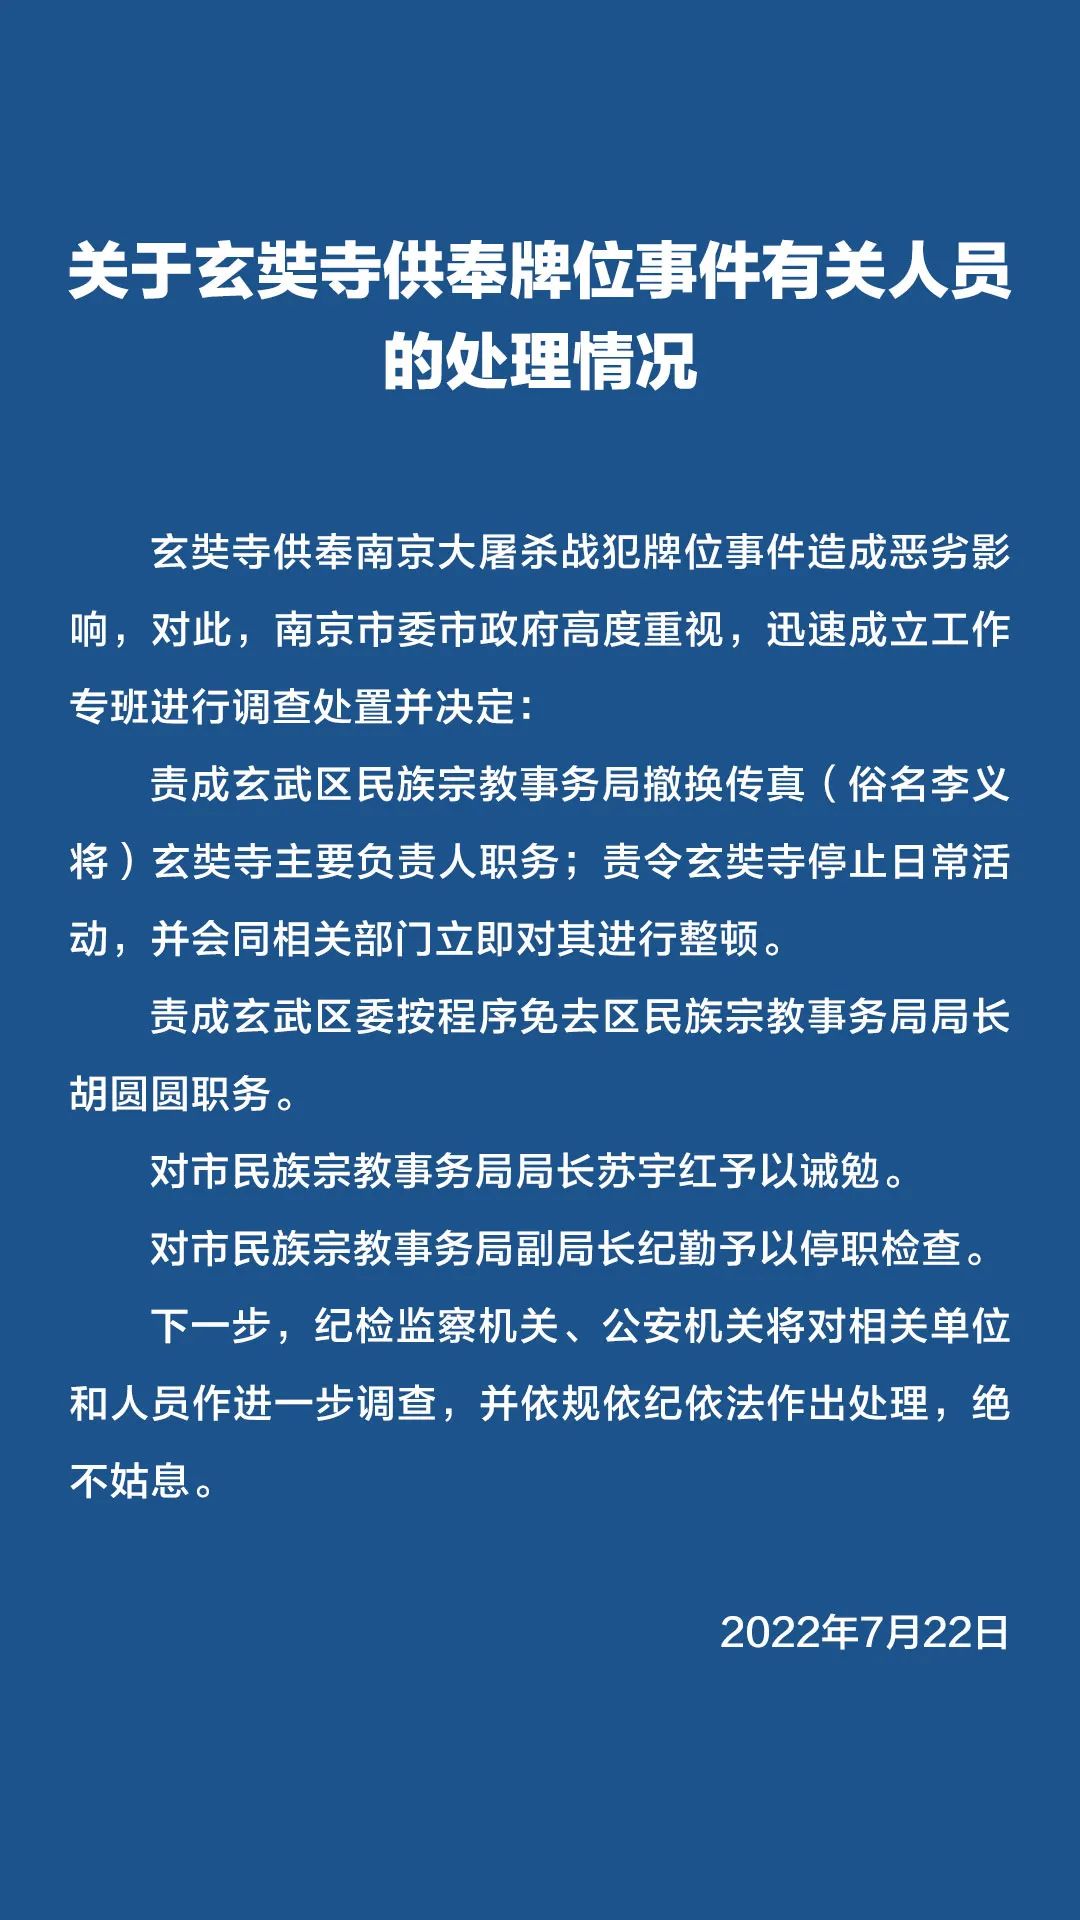 南京玄奘寺主要负责人被撤换，多名干部被处分